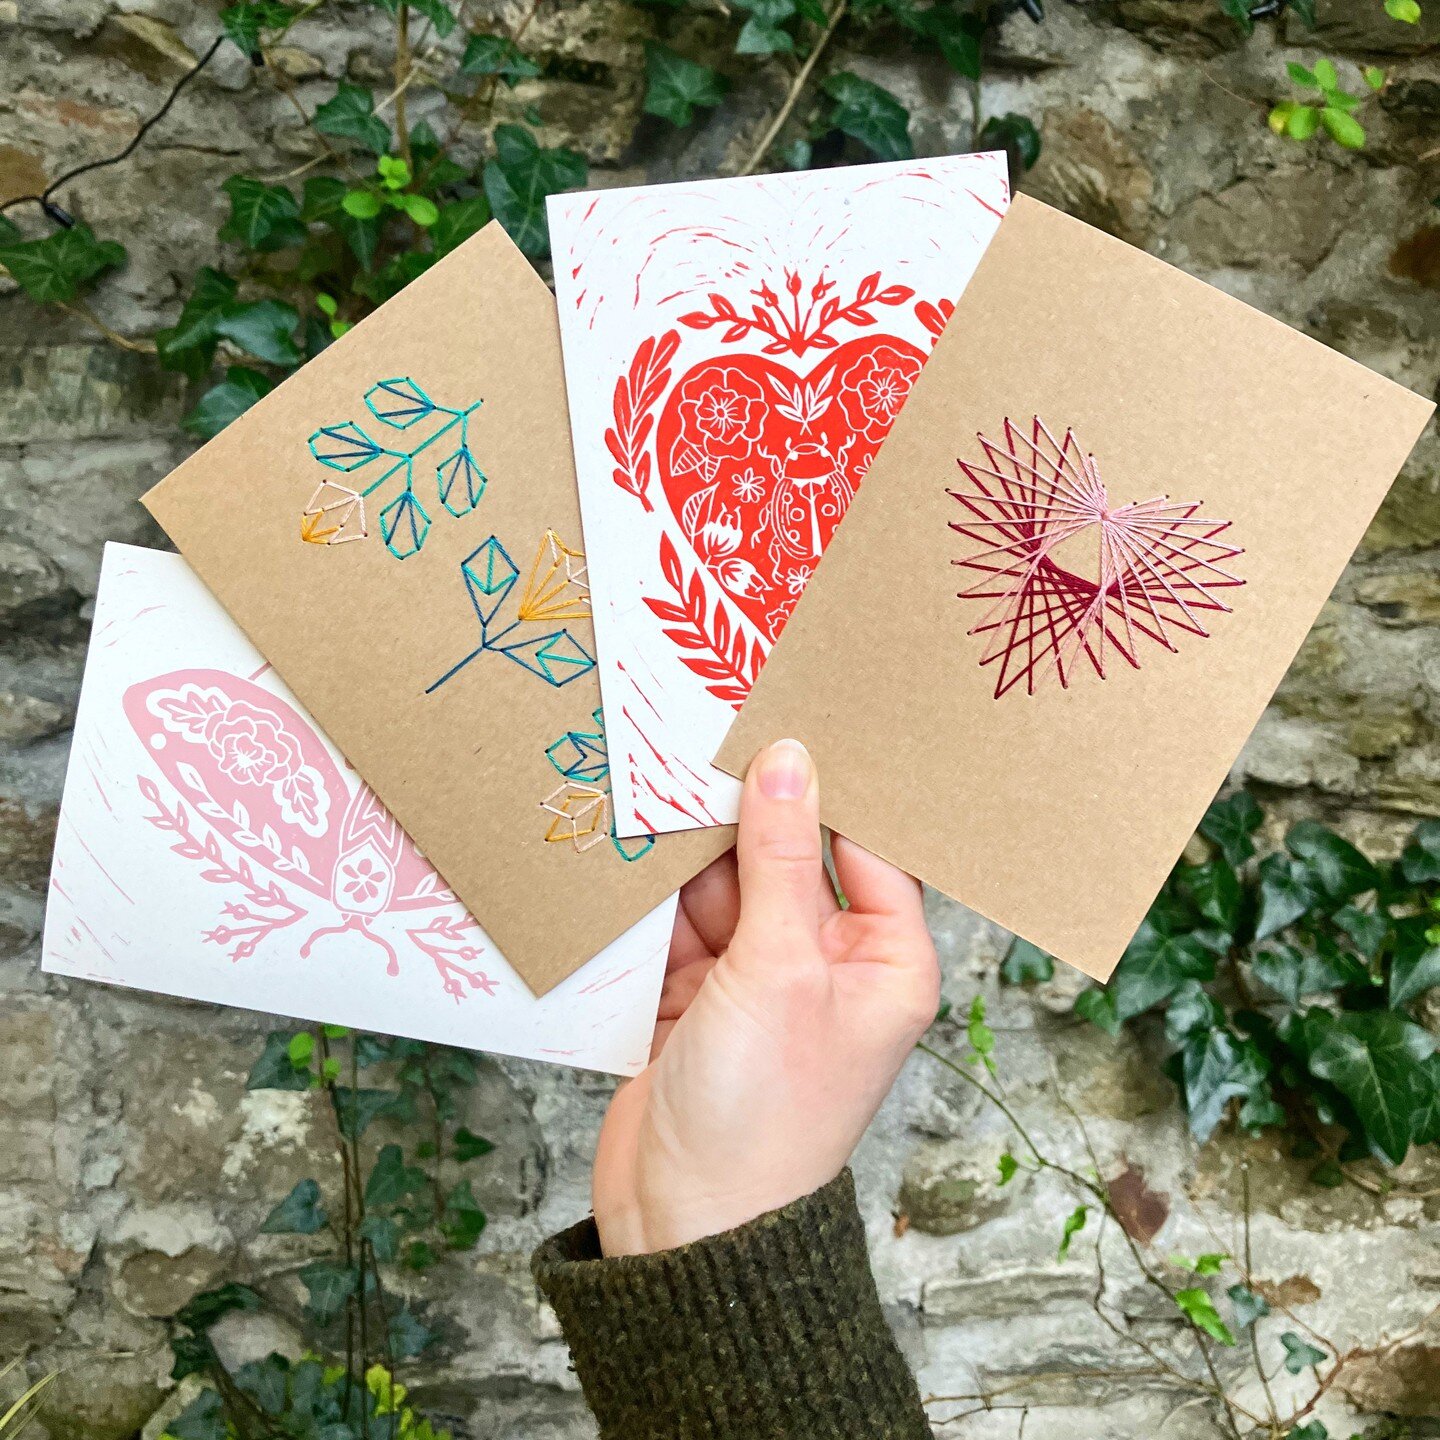 Handmade mother&lsquo;s day greeting cards
#printmaker #linocutprint #linocut #linocutting #linocarving #printmakersofinstagram #irishhandmade #irishmade #reliefcarving #handcarvedstamp #reliefprinting #linolschnitt #linocutprintmaking #paperembroide